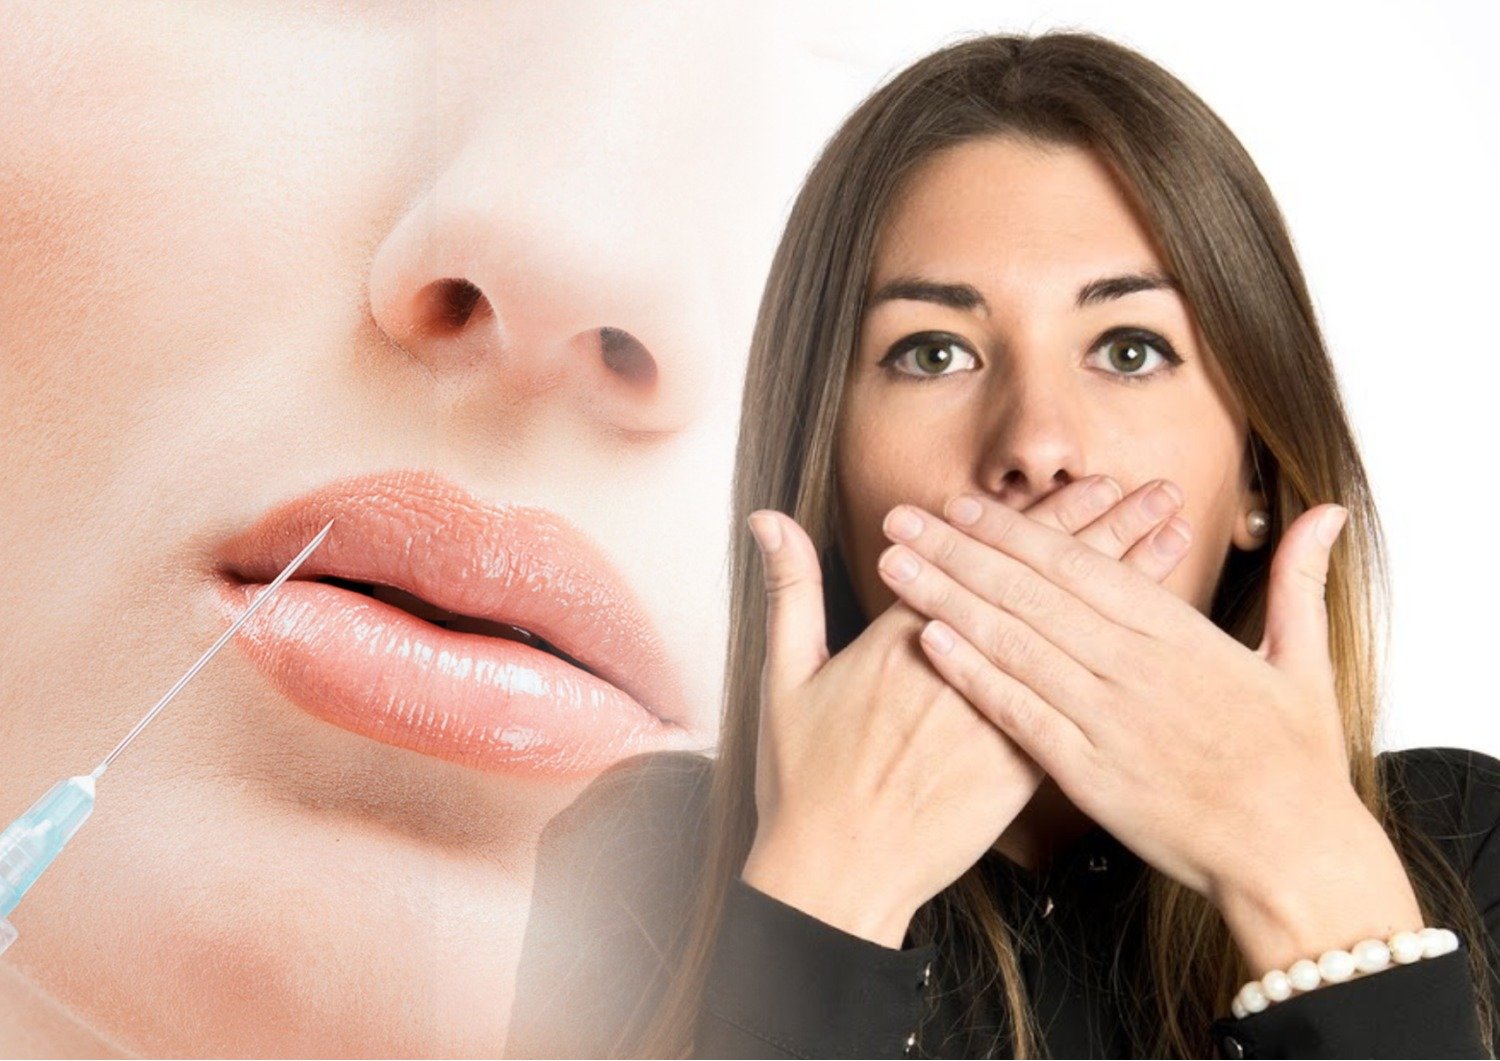 Увлажнение губ гиалуроновой кислотой. Процедура увлажнения губ. Увлажнение губ гиалуроновой кислотой до и после.